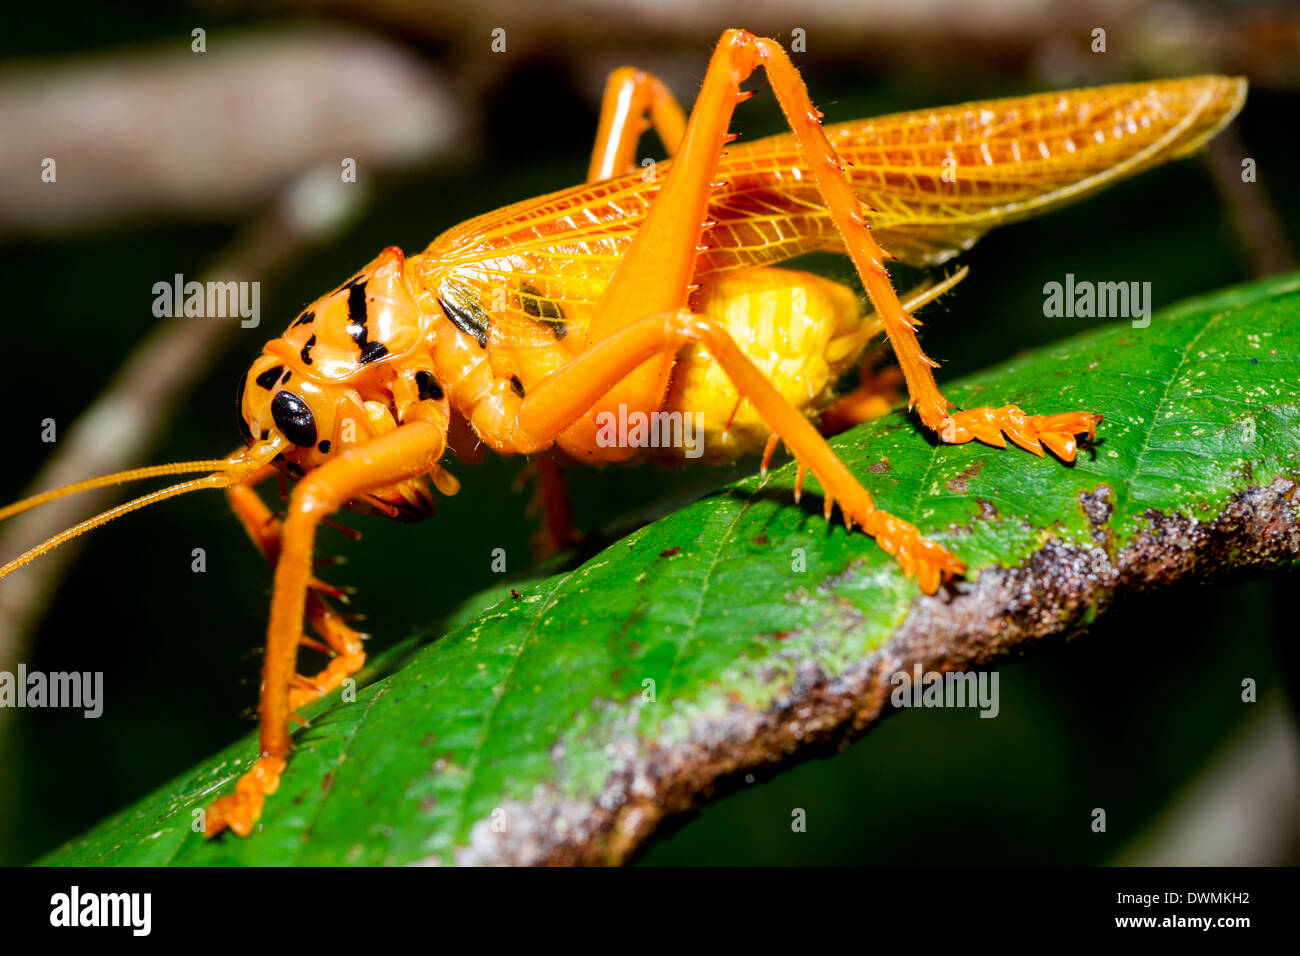 Orange and black bush cricket (Tettigoniidae), Maliau Basin, Sabah, Borneo, Malaysia, Southeast Asia, Asia Stock Photo